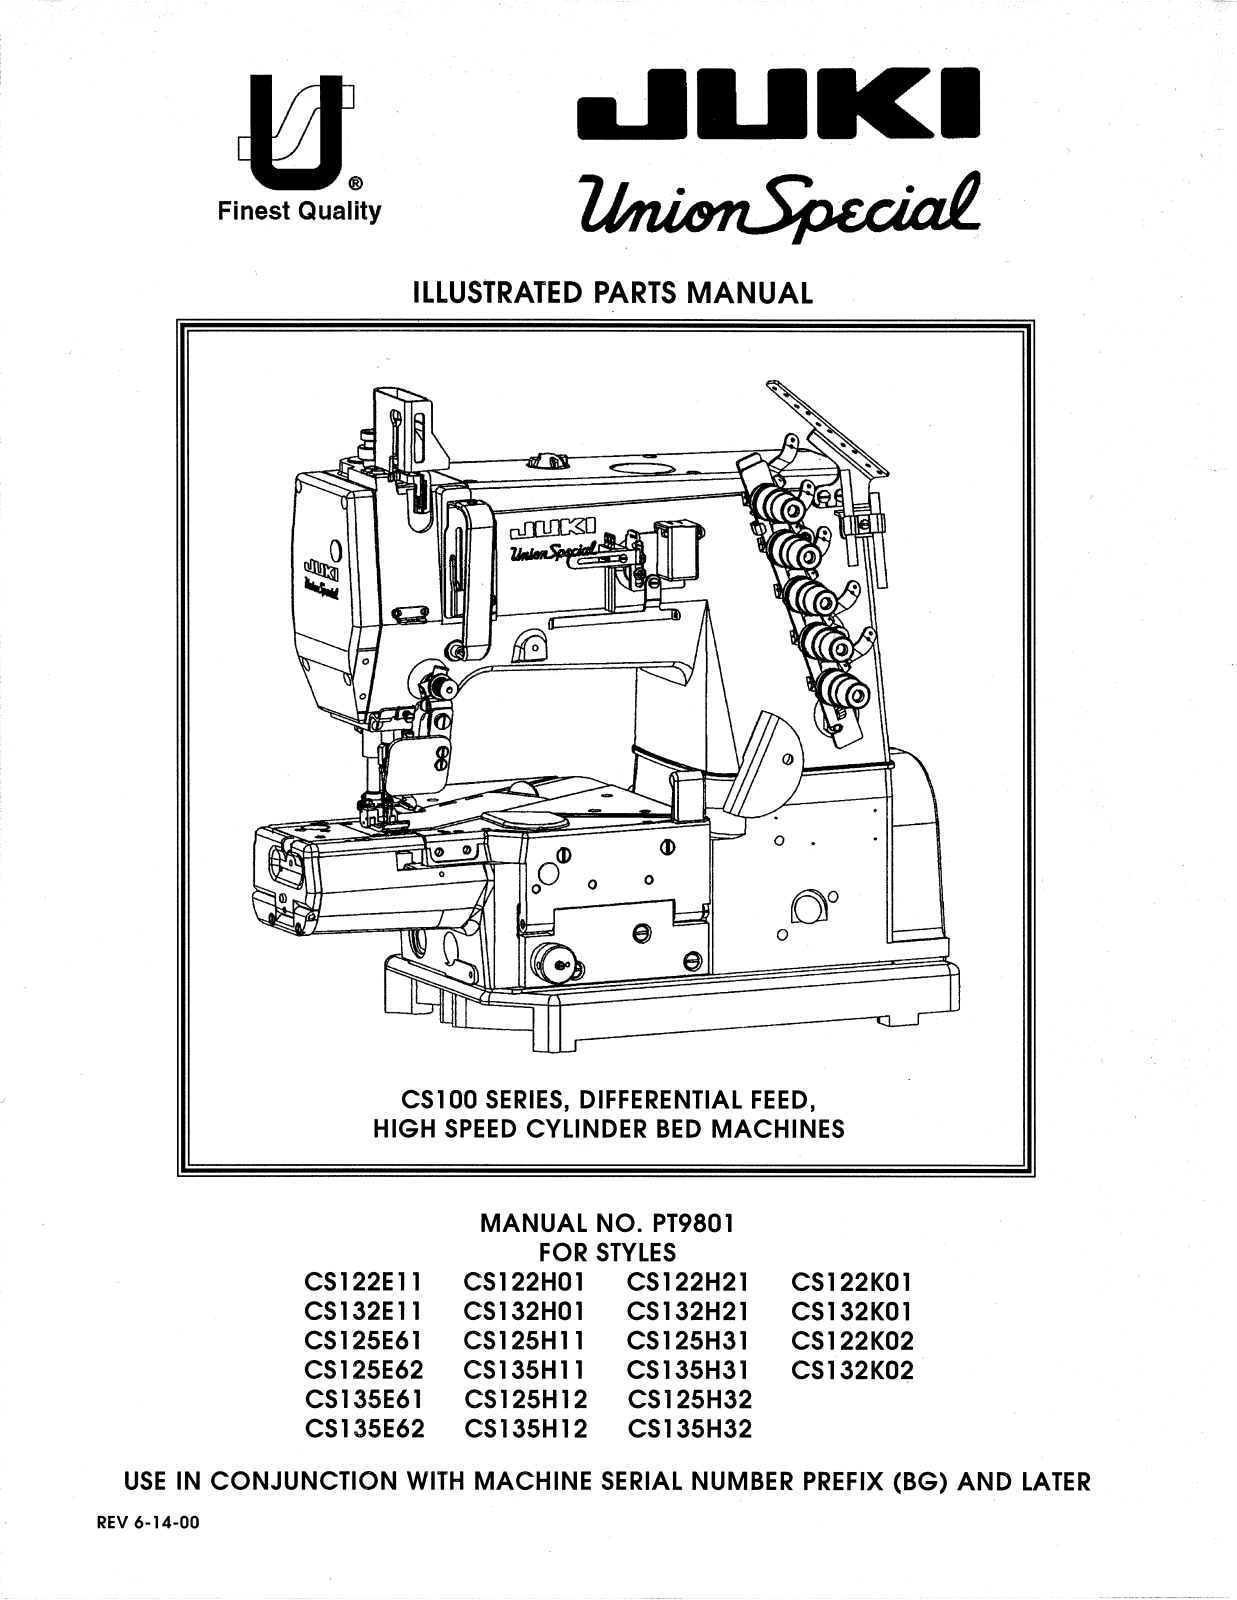 Union Special CS122E11, CS122H01, CS122H21, CS122K01, CS122K02 Parts List